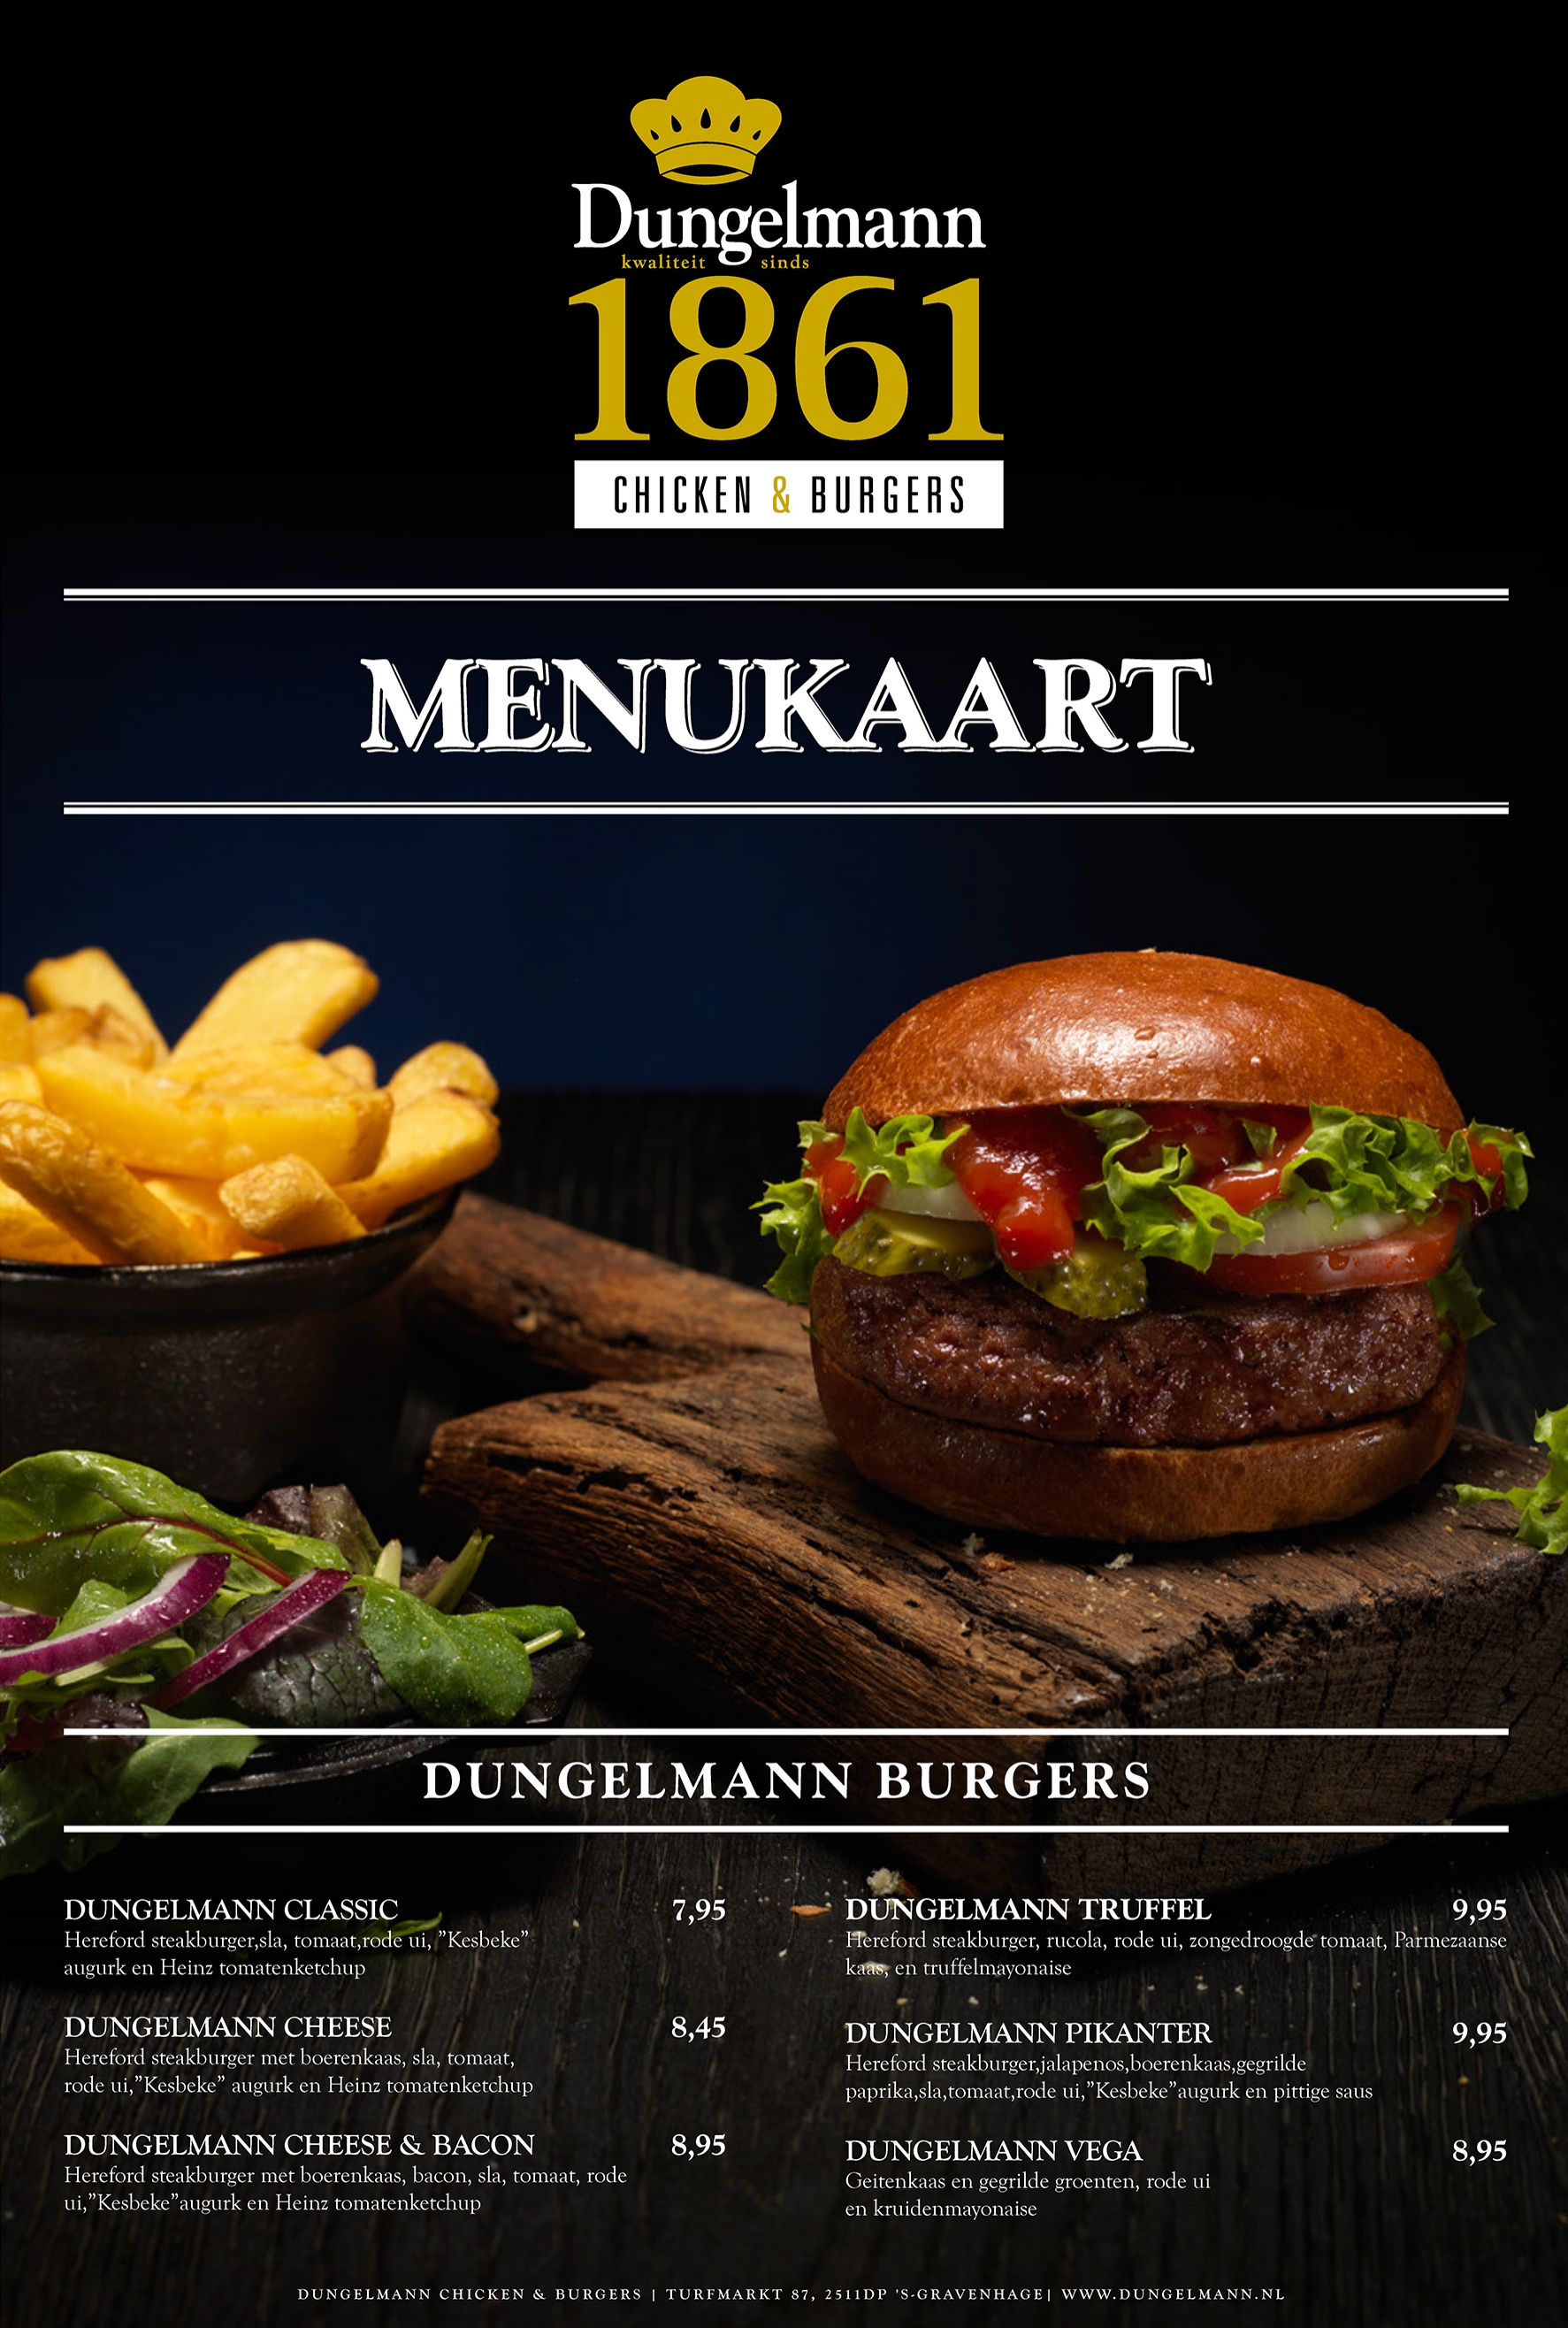 Dungelmann Chicken & Burgers1 | DSGND Tiedo Dieke.jpg